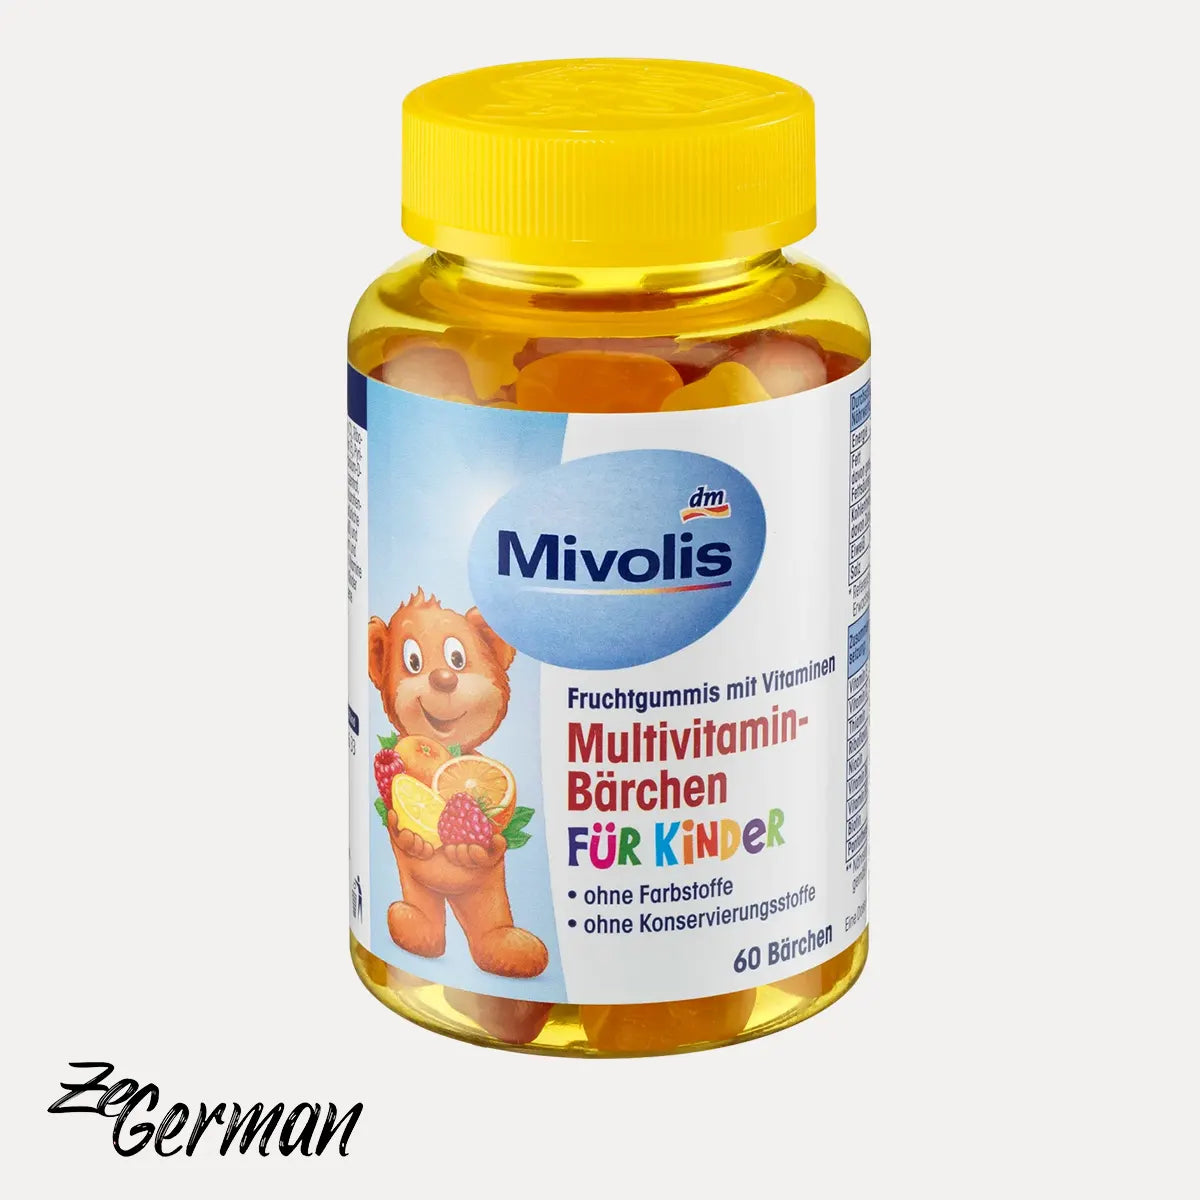 Multivitamin-Bärchen für Kinder, Fruchtgummis, 60 Stk